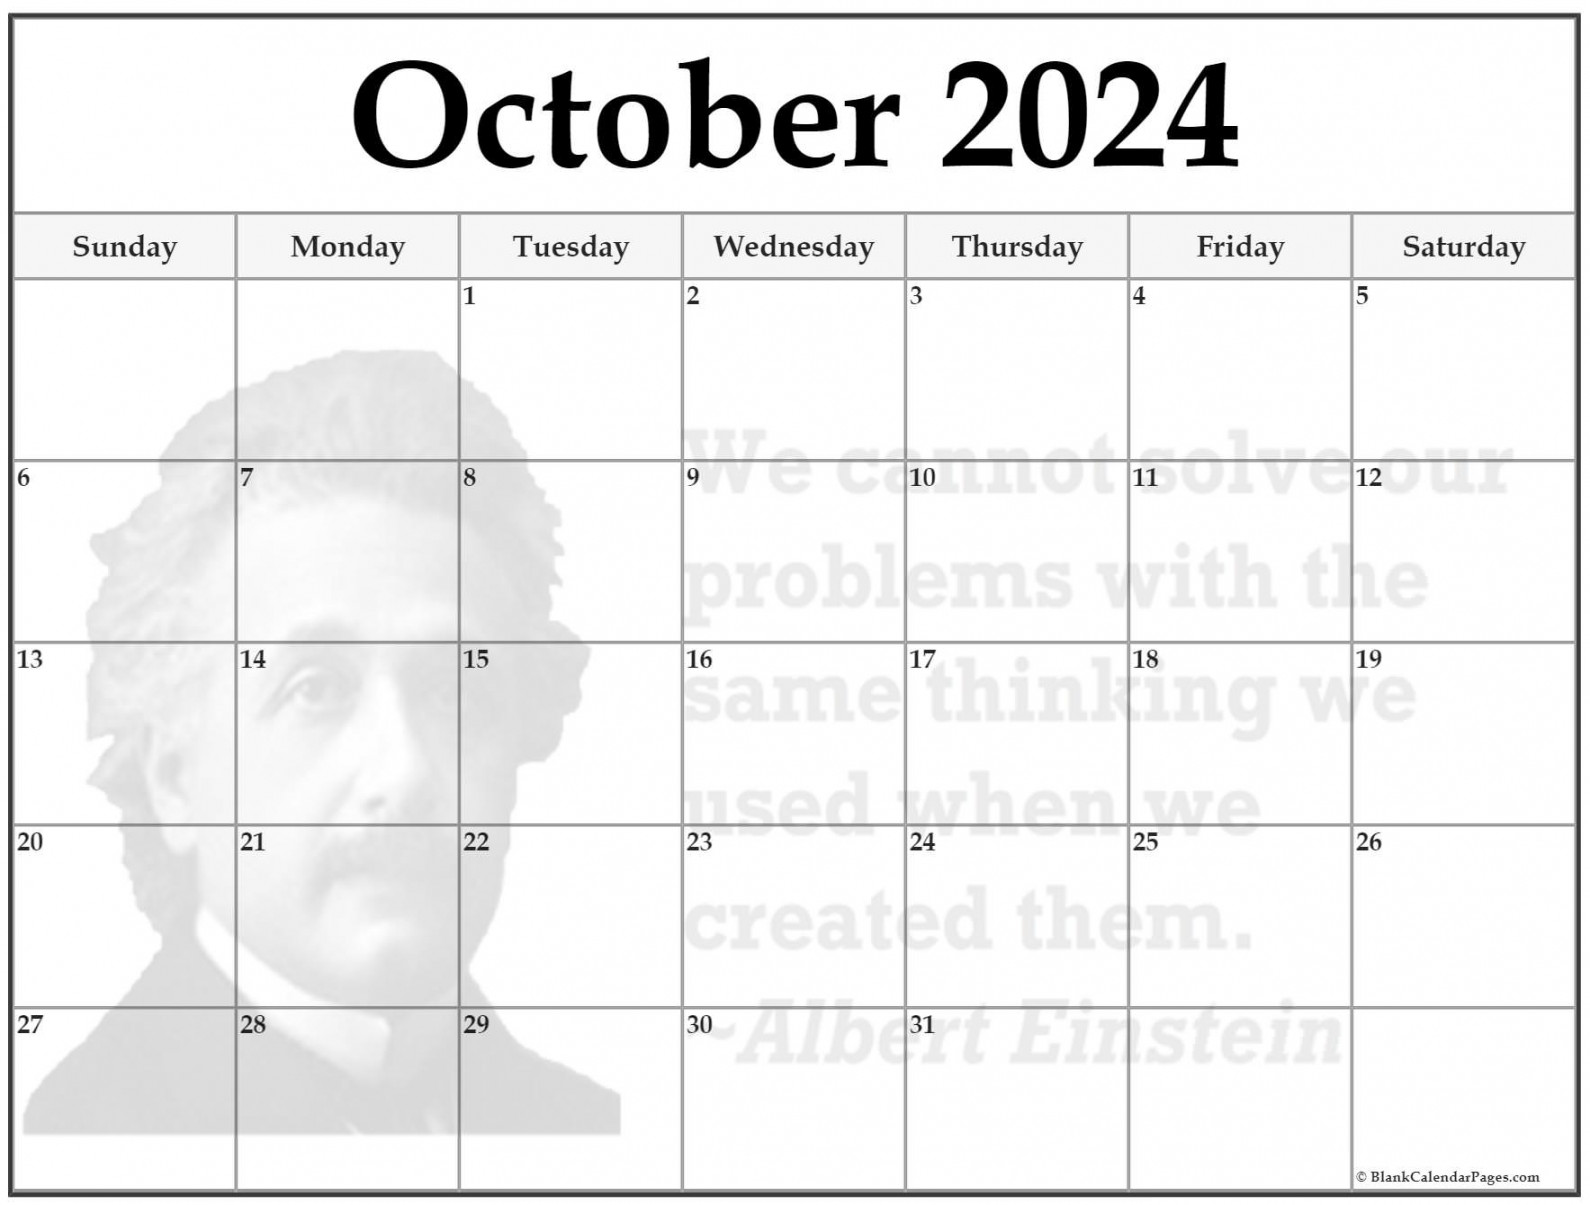 + October 20 quote calendars